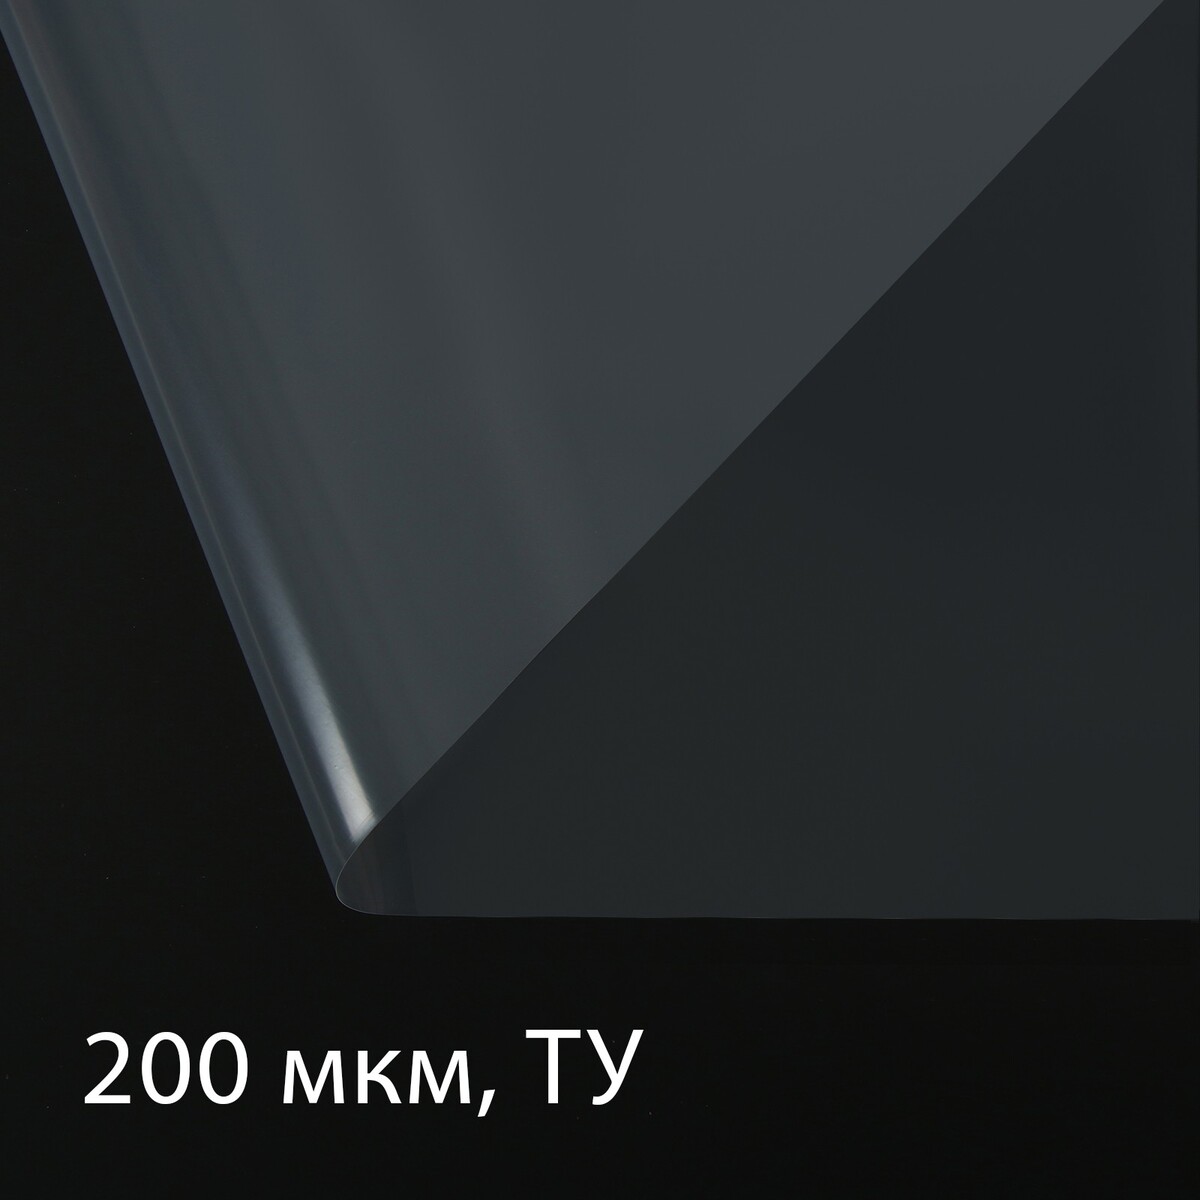 Пленка полиэтиленовая, толщина 200 мкм, прозрачная, 5 × 3 м, рукав (1.5 м × 2), эконом 50% , greengo